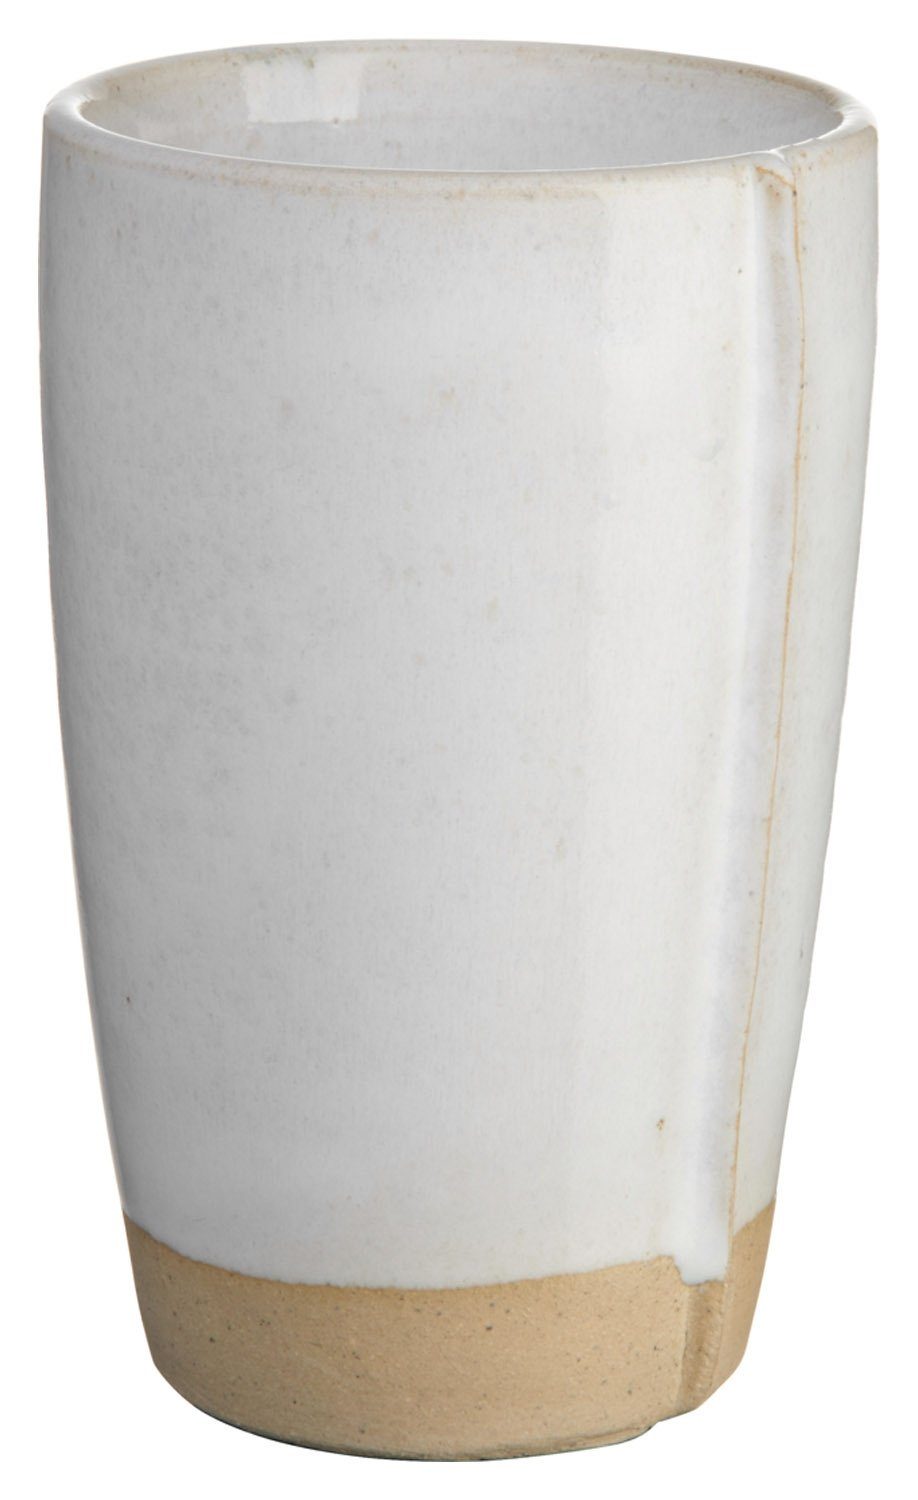 Platzset, VERANA, Cafe-Latte Becher, Weiß, Braun, 400 ml, ASA SELECTION milk foam